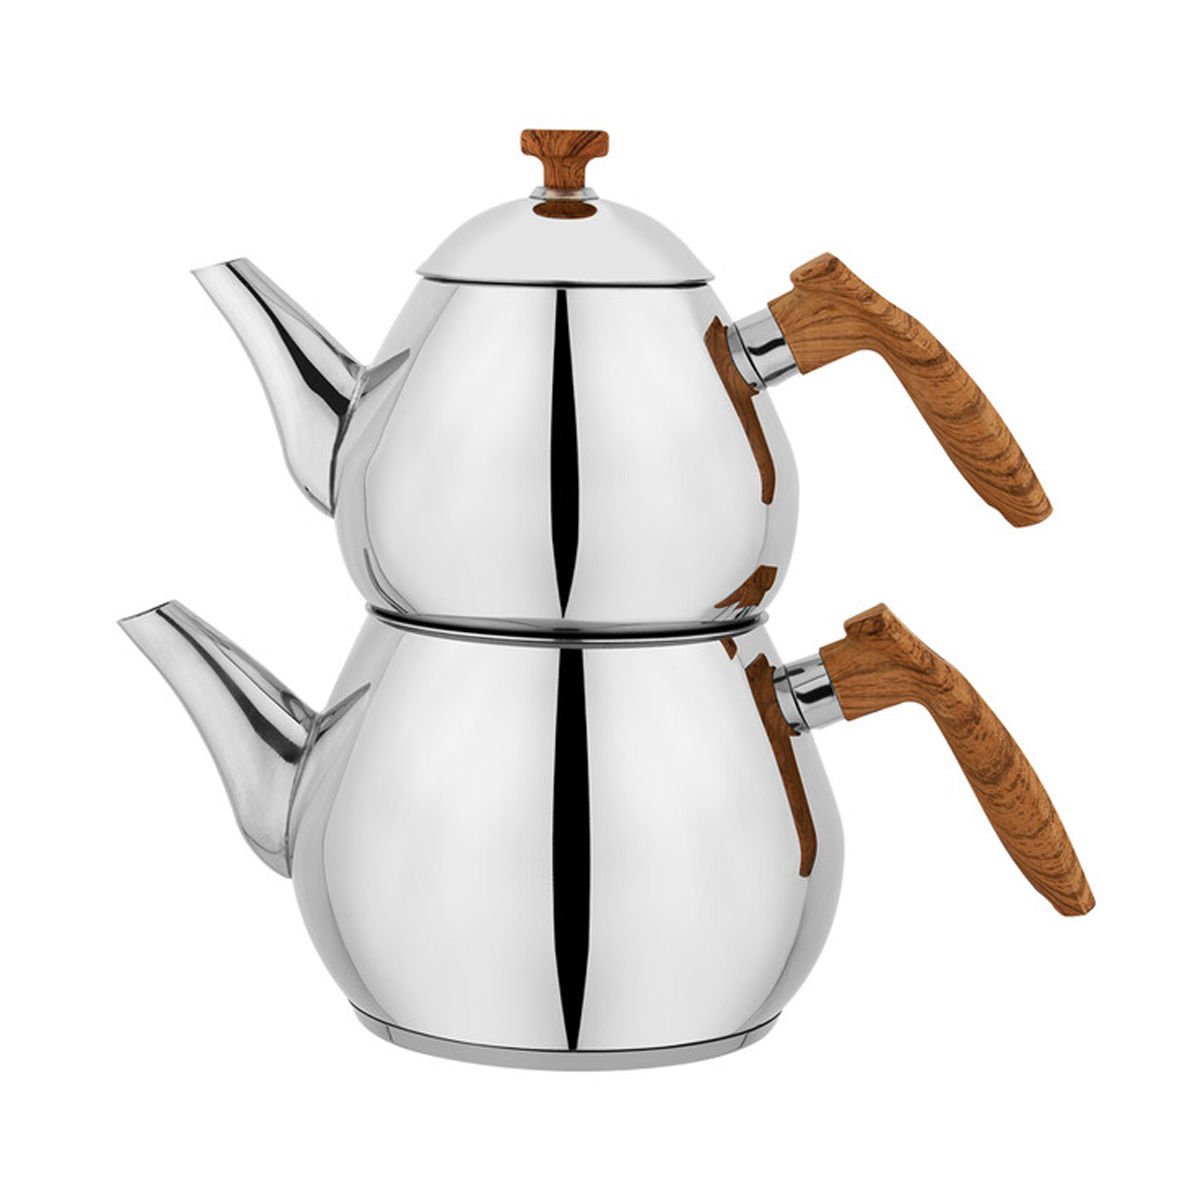 Schafer Tea Chef Küçük Boy Çaydanlık Takımı 4 Parça-Kahve